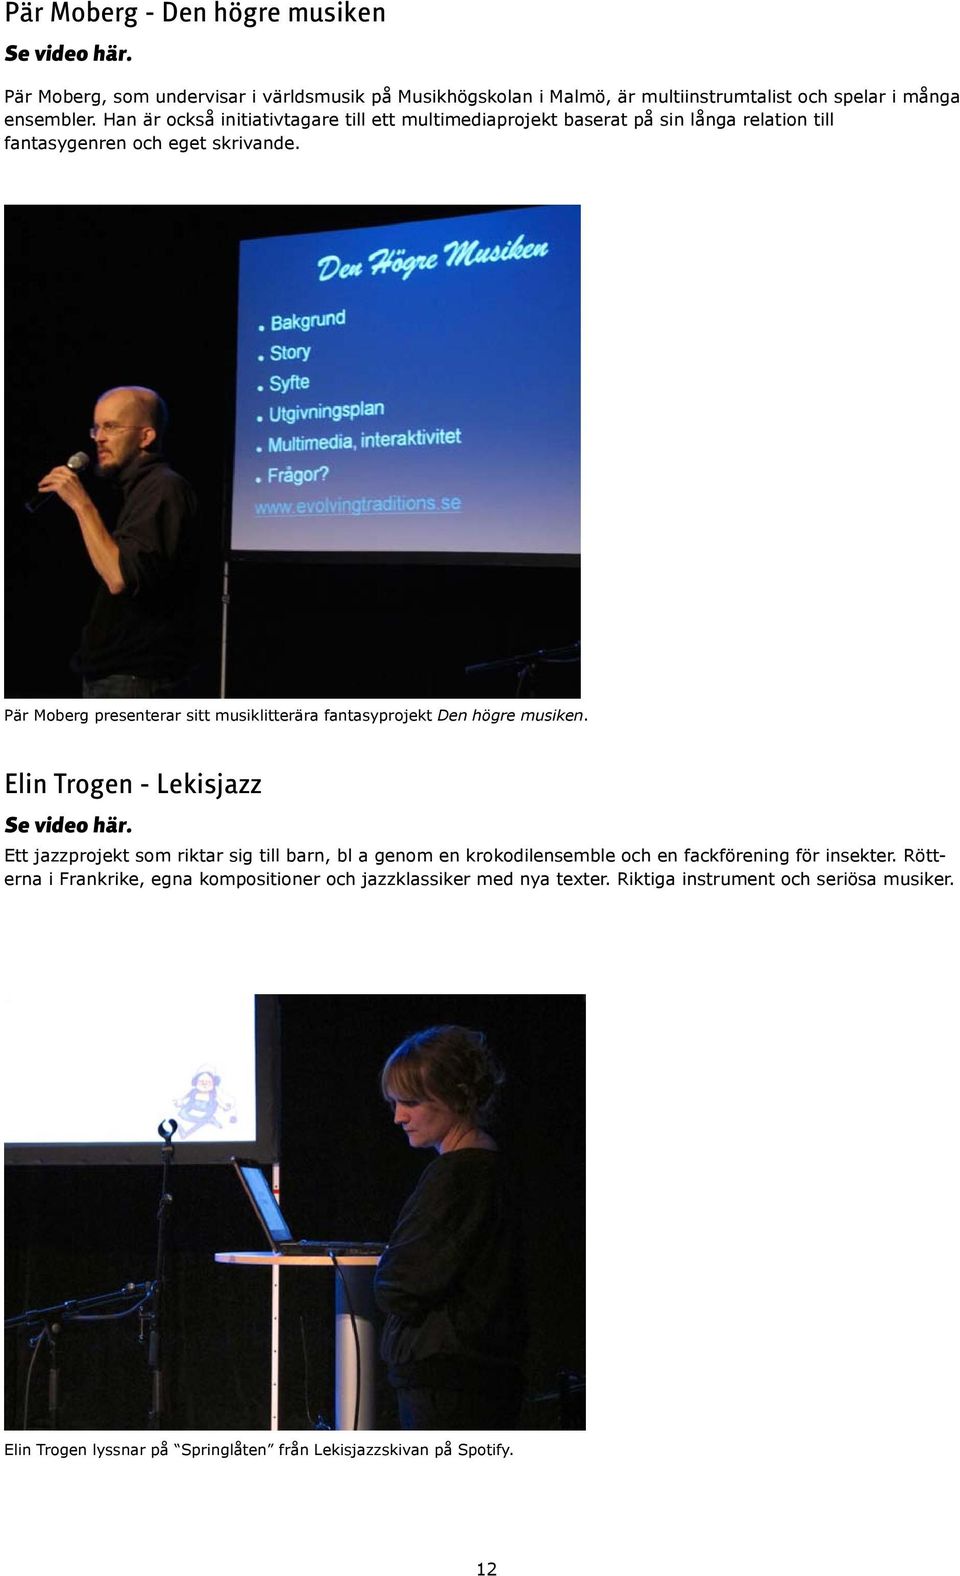 Pär Moberg presenterar sitt musiklitterära fantasyprojekt Den högre musiken.